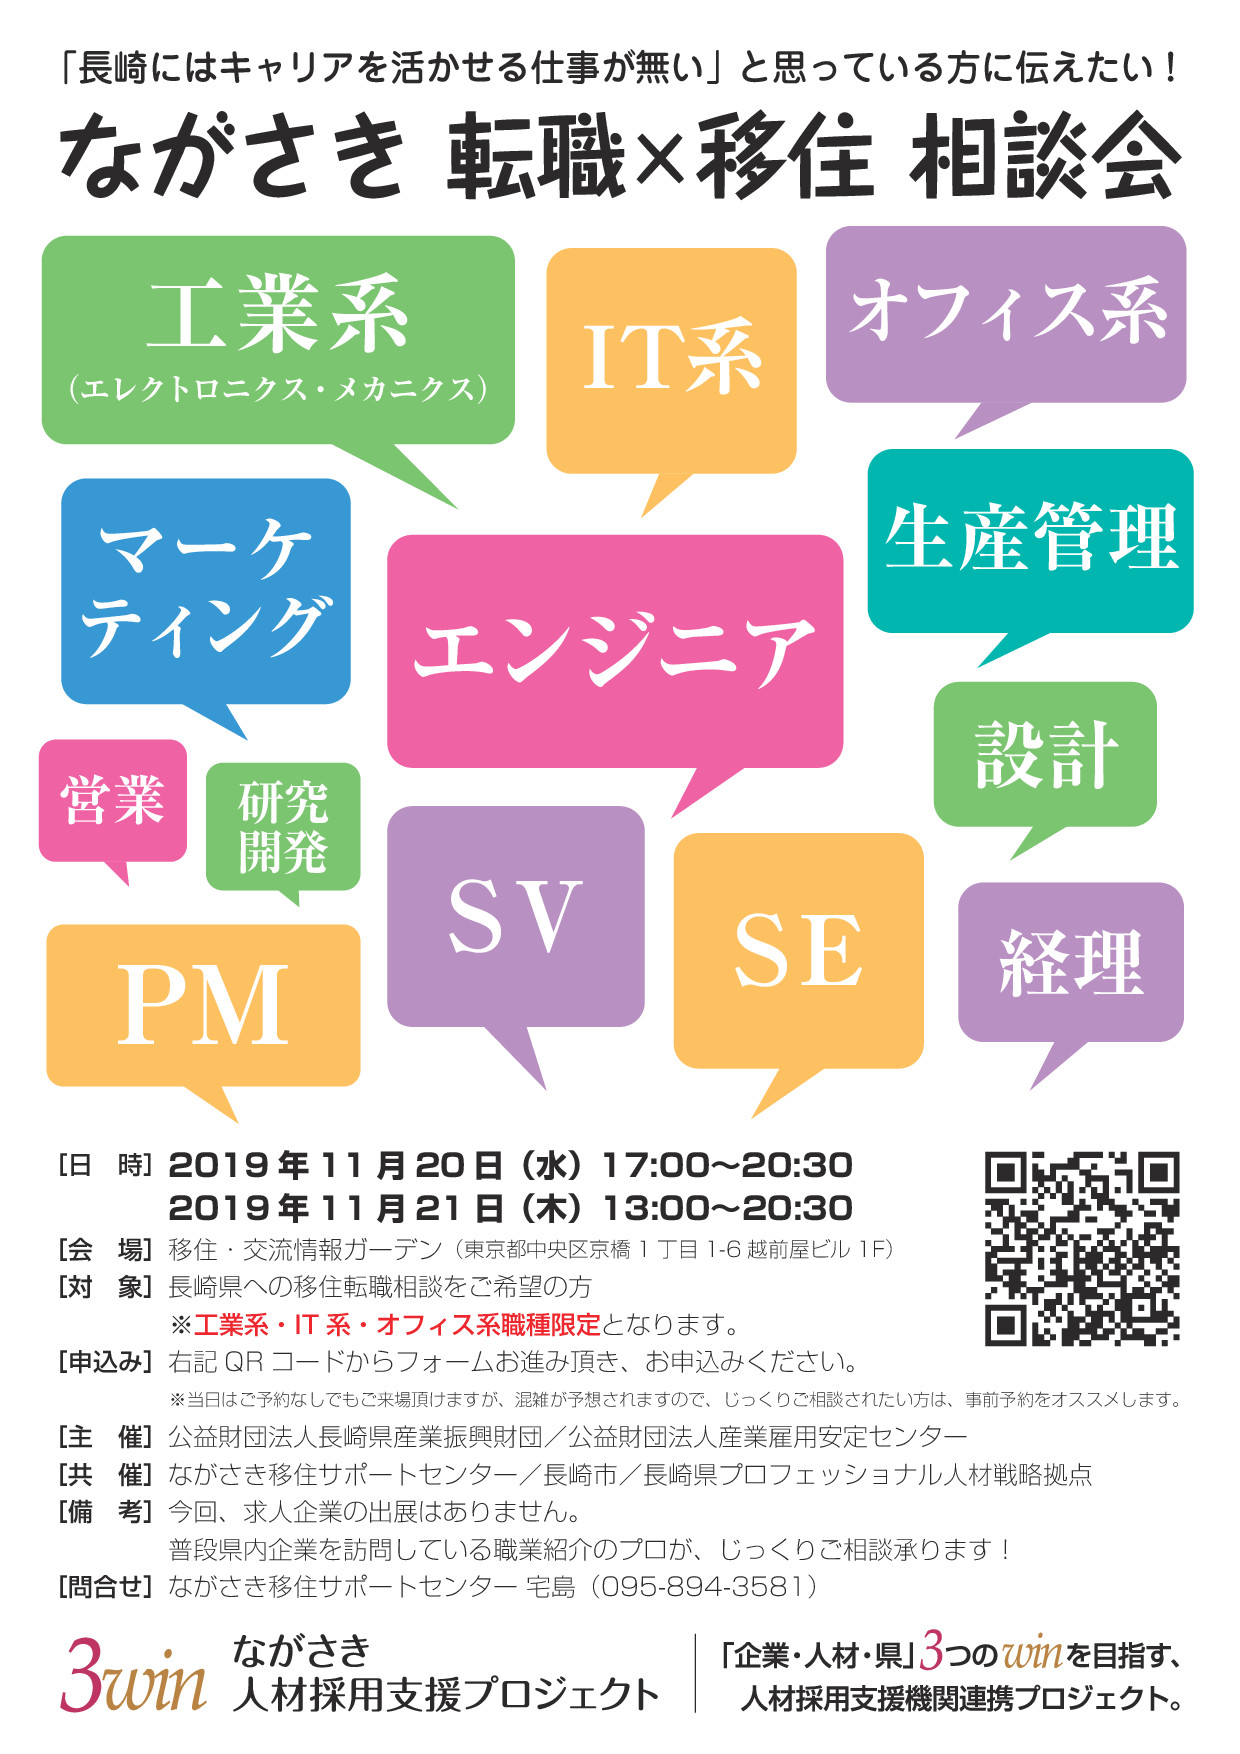 ながさき 転職×移住 相談会  in東京 | 移住関連イベント情報